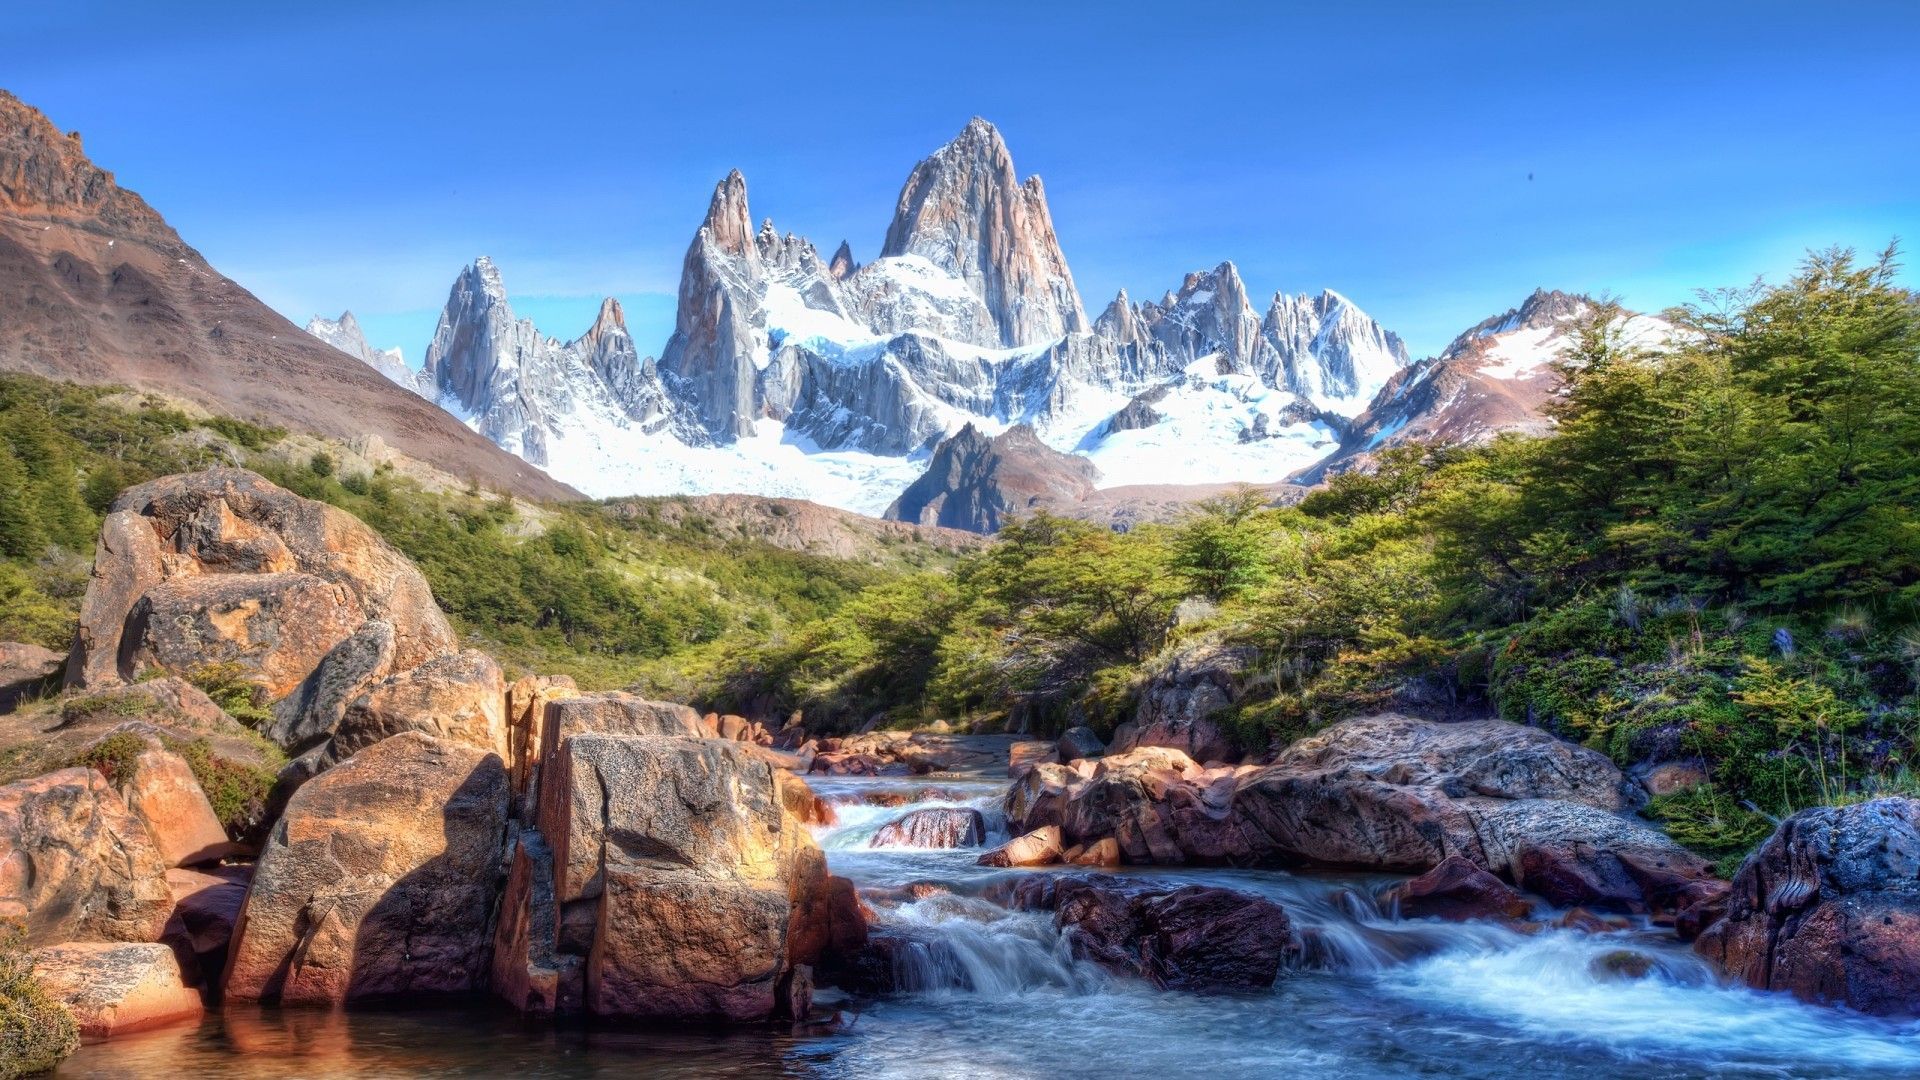 1080P HD Wallpaper Landscape.. landscape > Mountains and River wallpaper bac. Mountain wallpaper, Background picture, Los glaciares national park